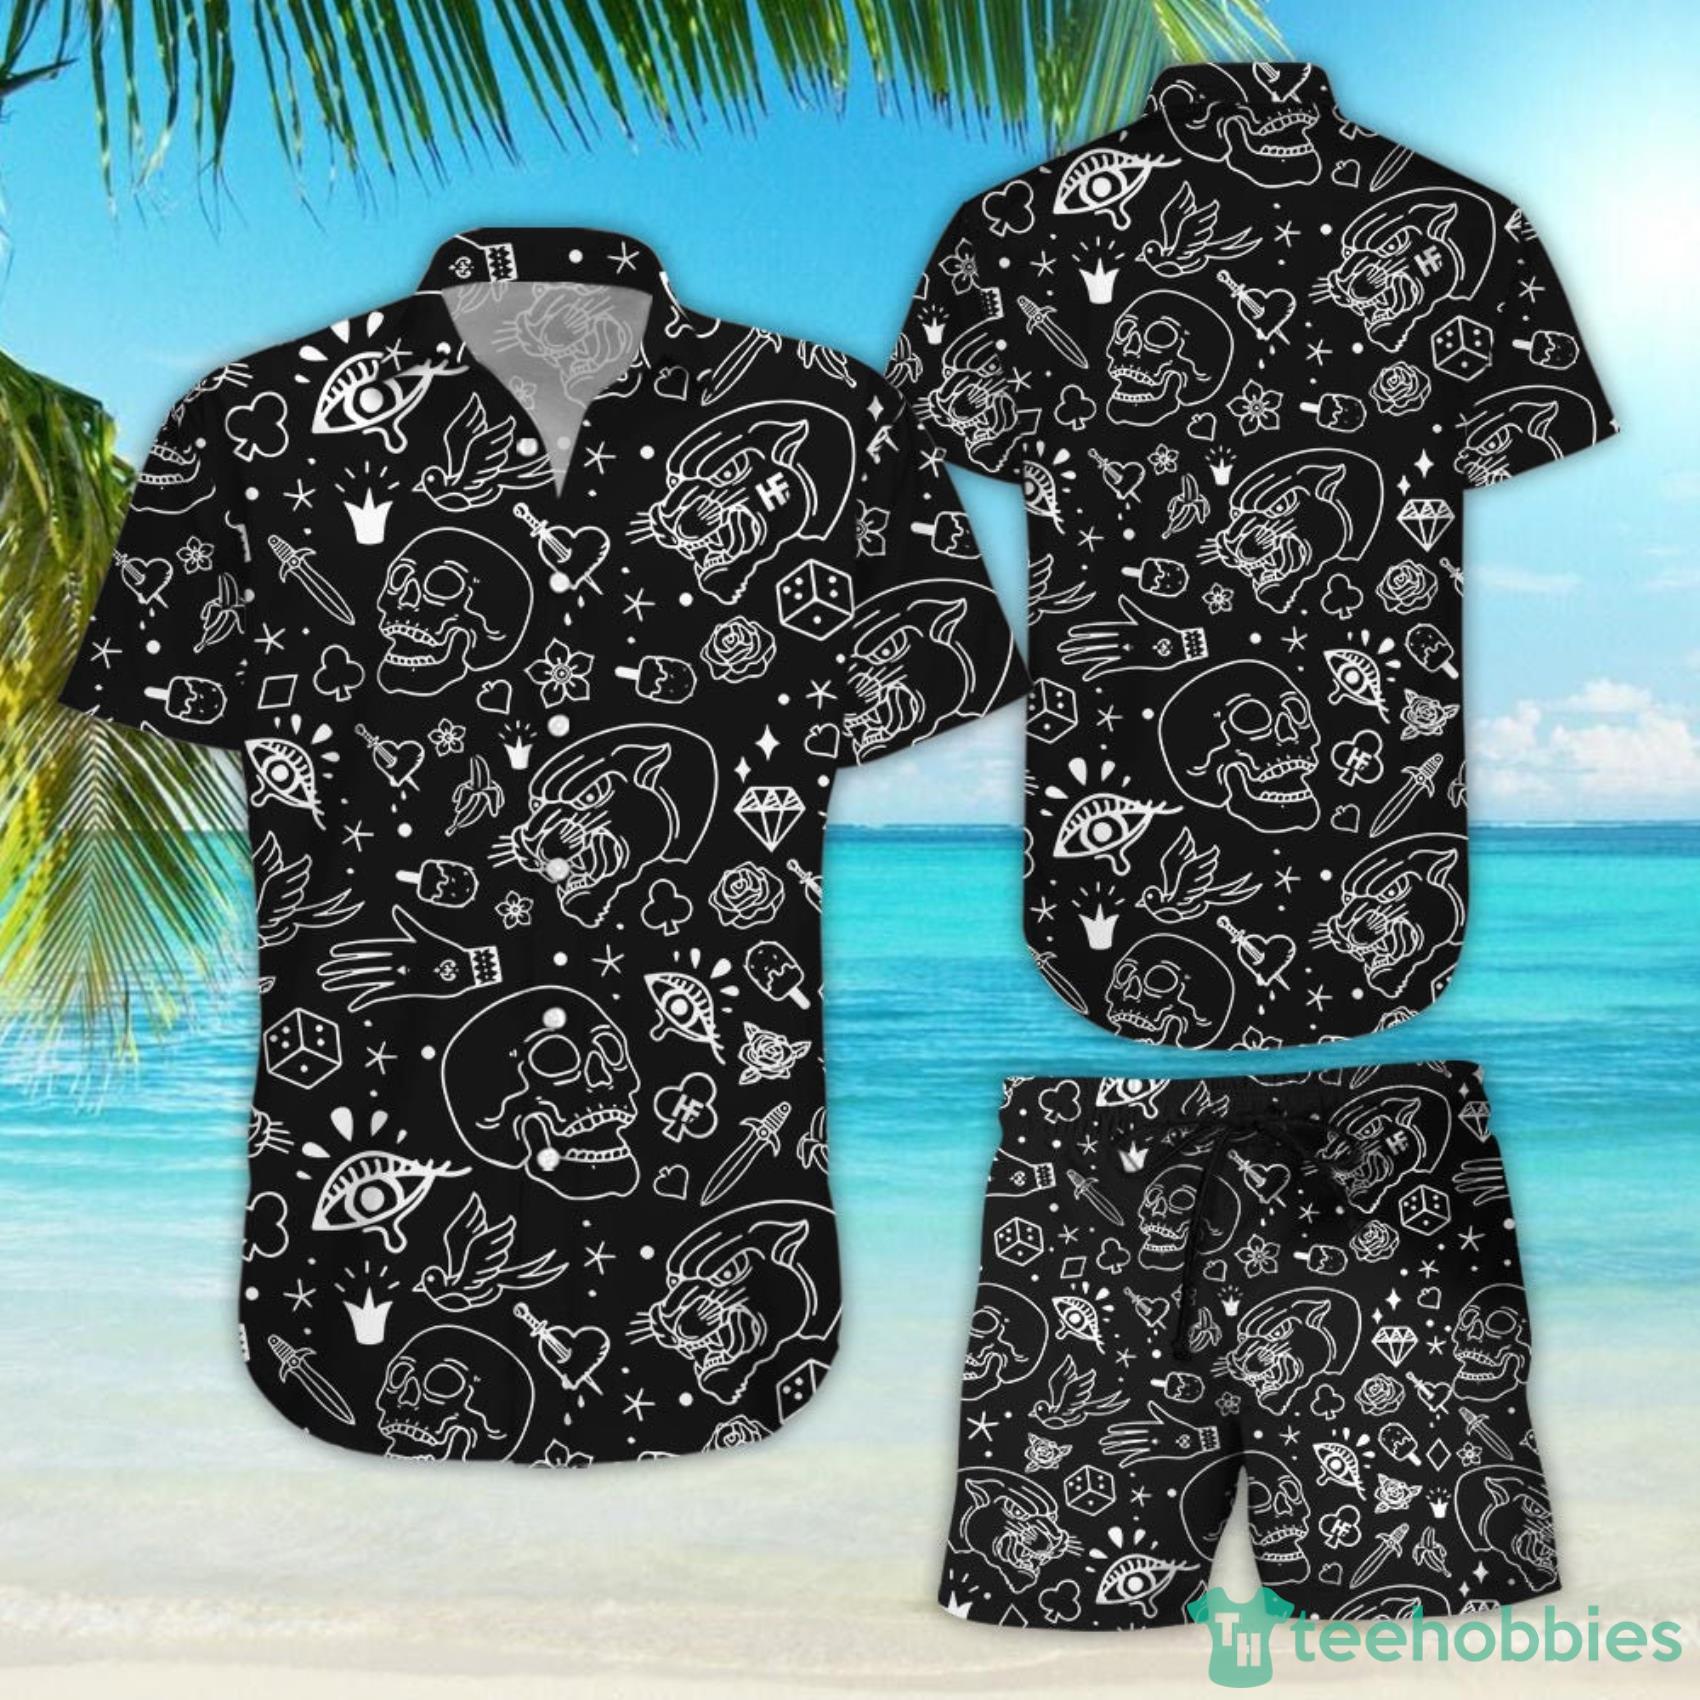 Happy aloha shirt Friday : r/Tiki